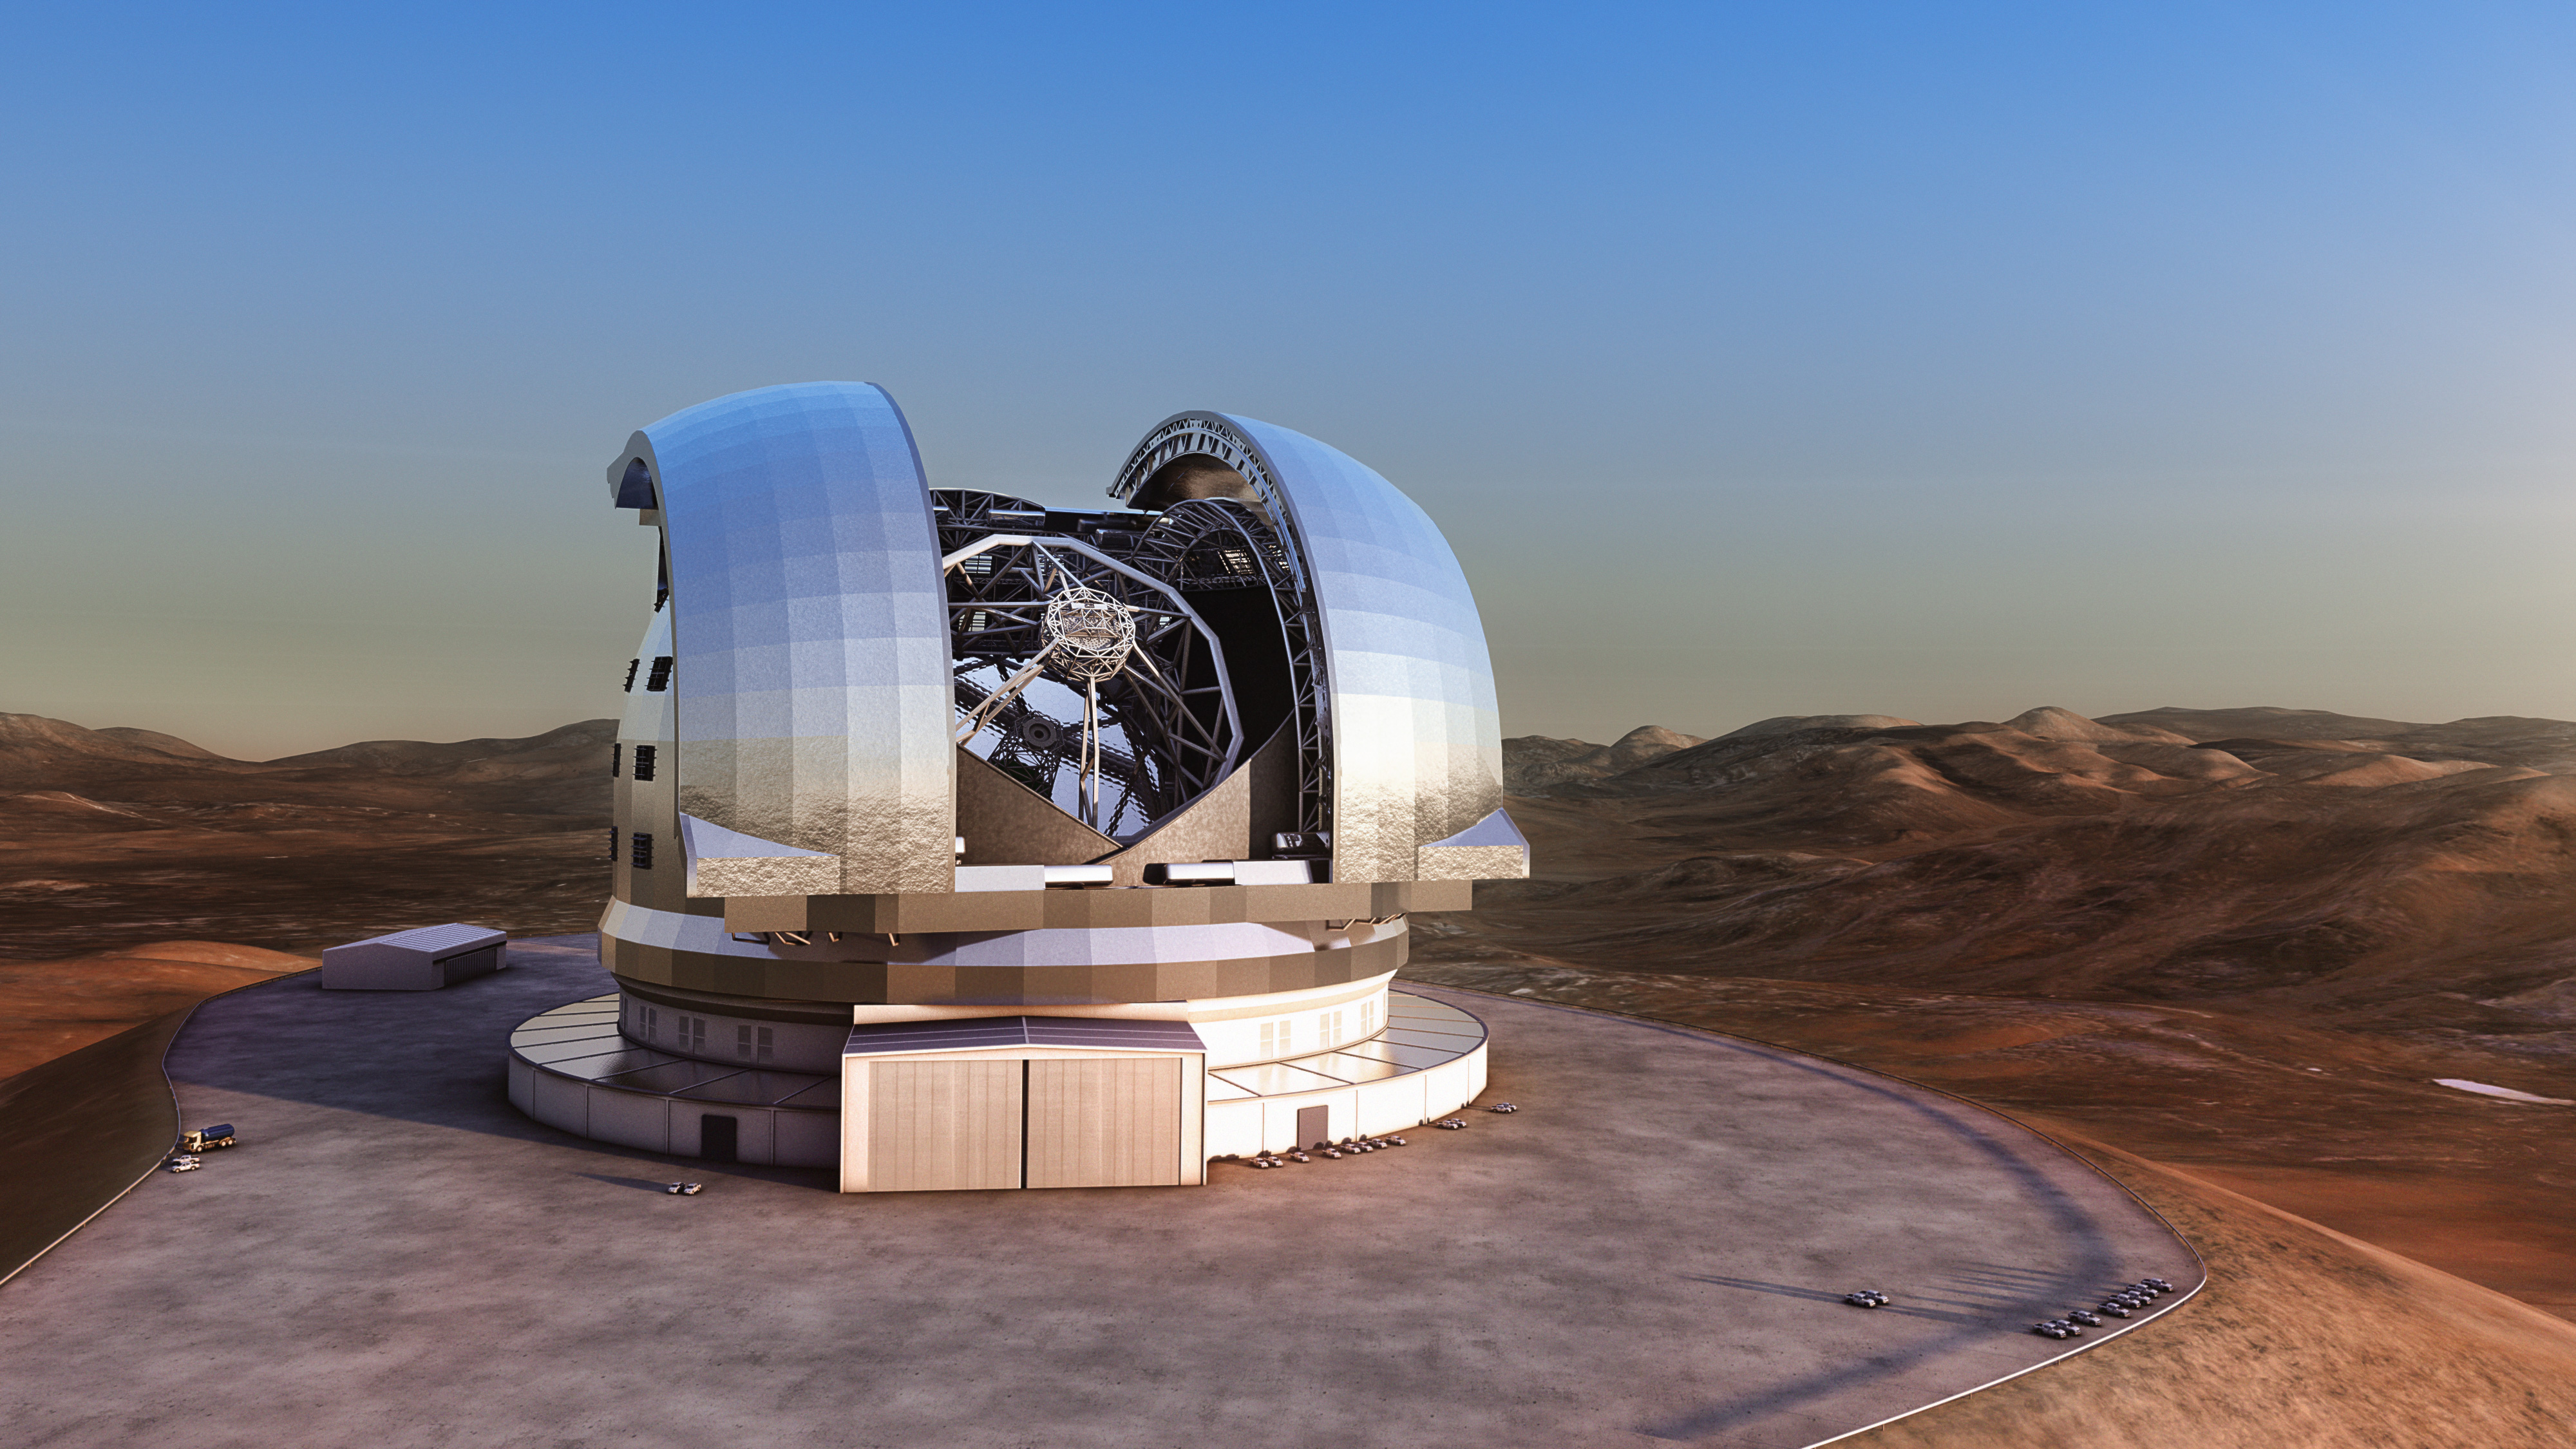 Diese künstlerische Darstellung zeigt das Extremely Large Telescope (ELT) in seiner Kuppel auf dem Cerro Armazones, einem 3046 Meter hohen Berg in der chilenischen Atacamawüste. Mit einem Hauptspiegeldurchmesser von 39,3 Metern wird das ELT das weltweit grösste Teleskop für den sichtbaren und nahinfraroten Spektralbereich sein. Es soll zu Beginn des kommenden Jahrzehnts in Betrieb gehen und sich einigen der grössten wissenschaftlichen Rätsel unserer Zeit widmen. Bildnachweis: ESO/L. Calçada